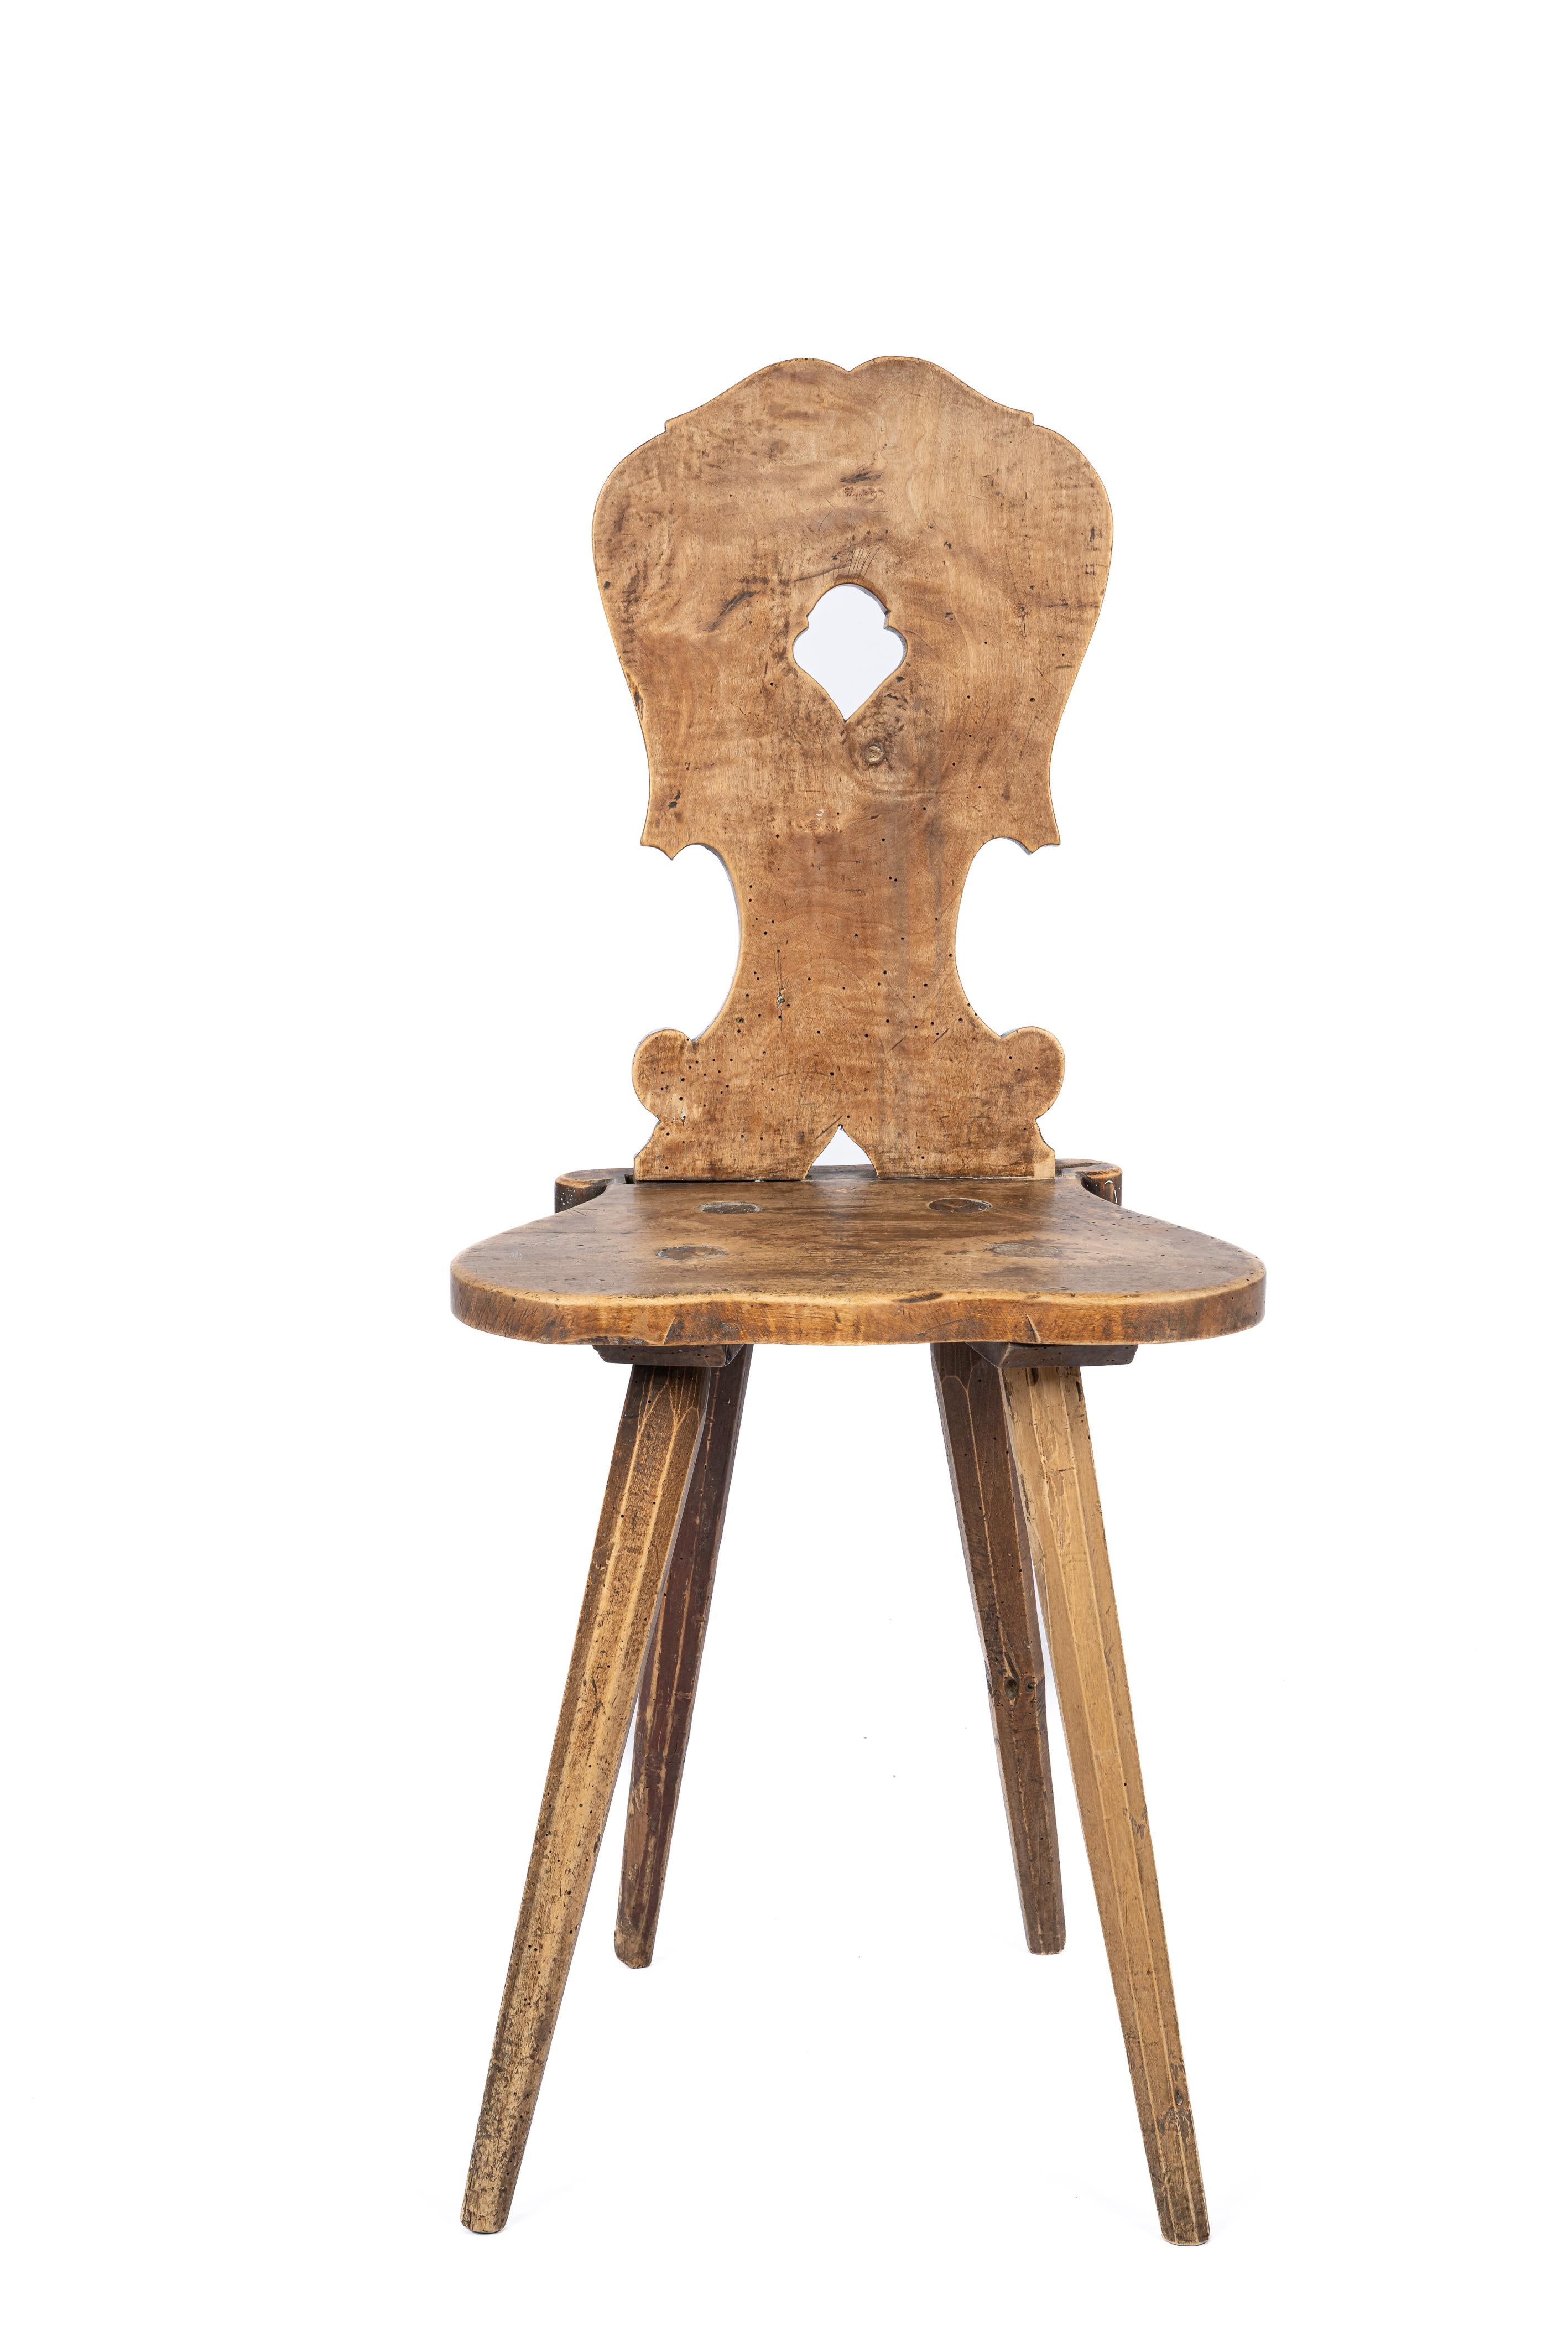 Entdecken Sie diesen exquisiten antiken, primitiven Stuhl, der um 1850 in den süddeutschen Bergen hergestellt wurde. Seine klaren Linien mit sanften Rundungen, die natürliche Ausstrahlung des reinen Holzes und die vielen kleinen Gebrauchsspuren